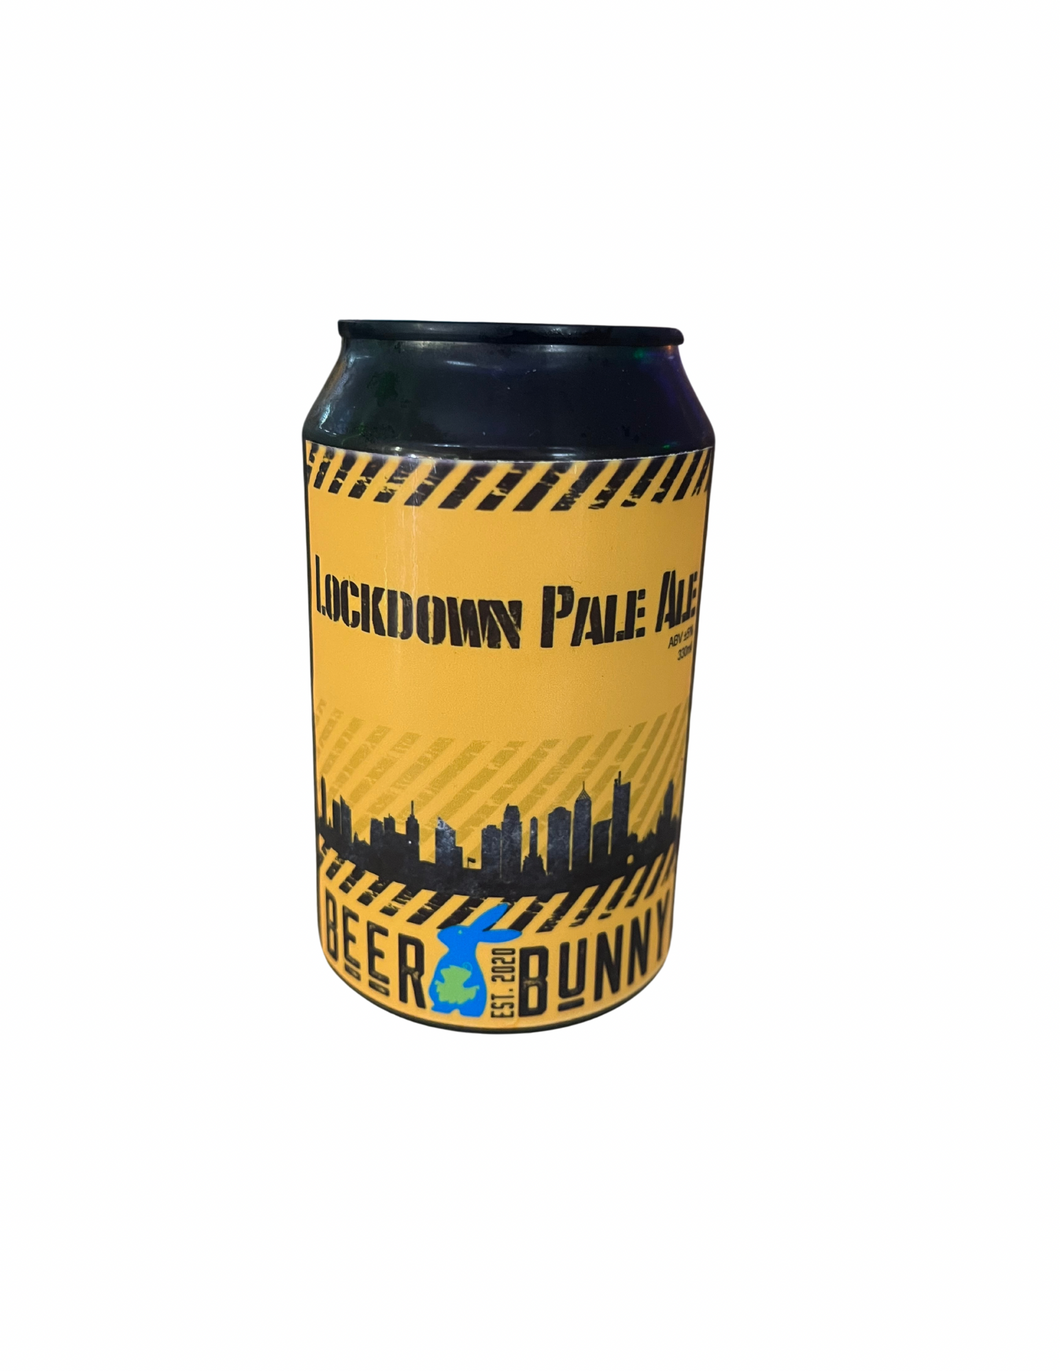 Beer Bunny Lockdown Pale Ale